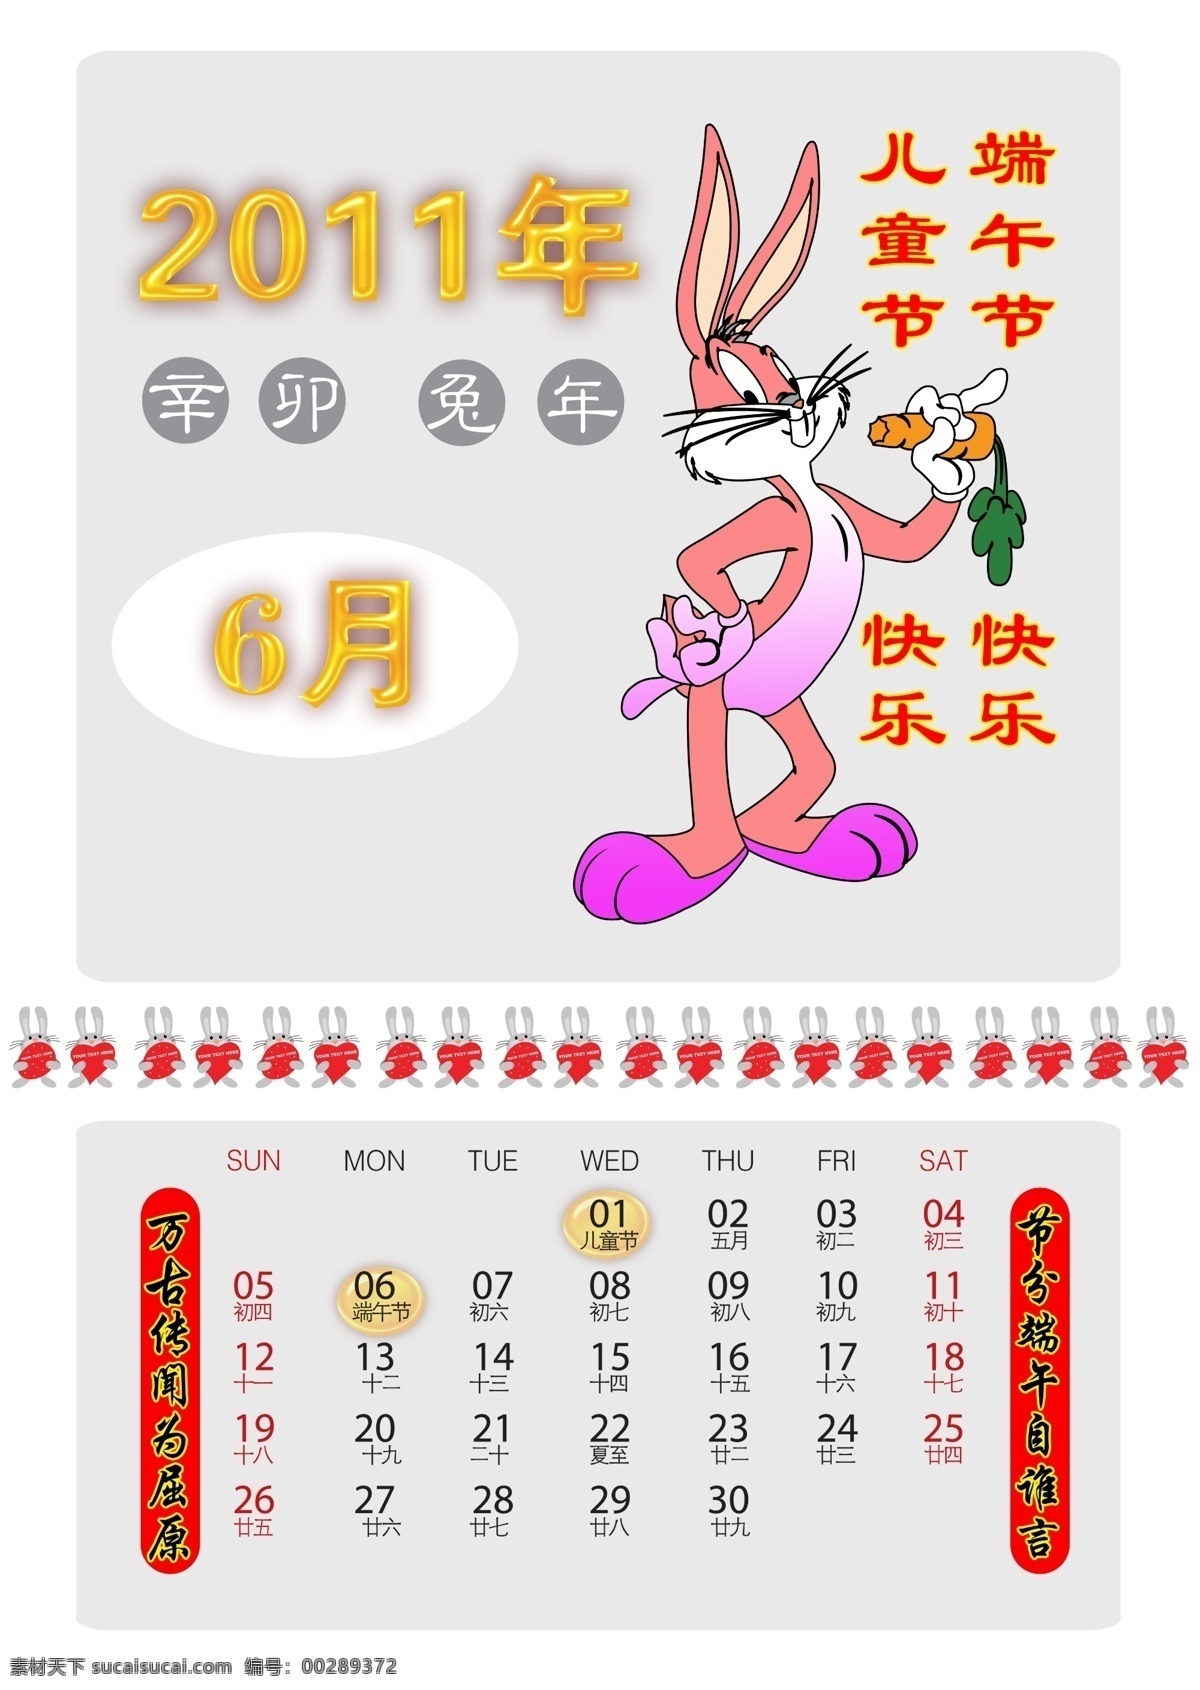 2011 6月 感恩节 挂历 广告设计模板 卡通 可爱 模板 兔年日历 年 月 兔年 日历 台历 兔子 小兔 新年 年份 其他模版 源文件 psd源文件